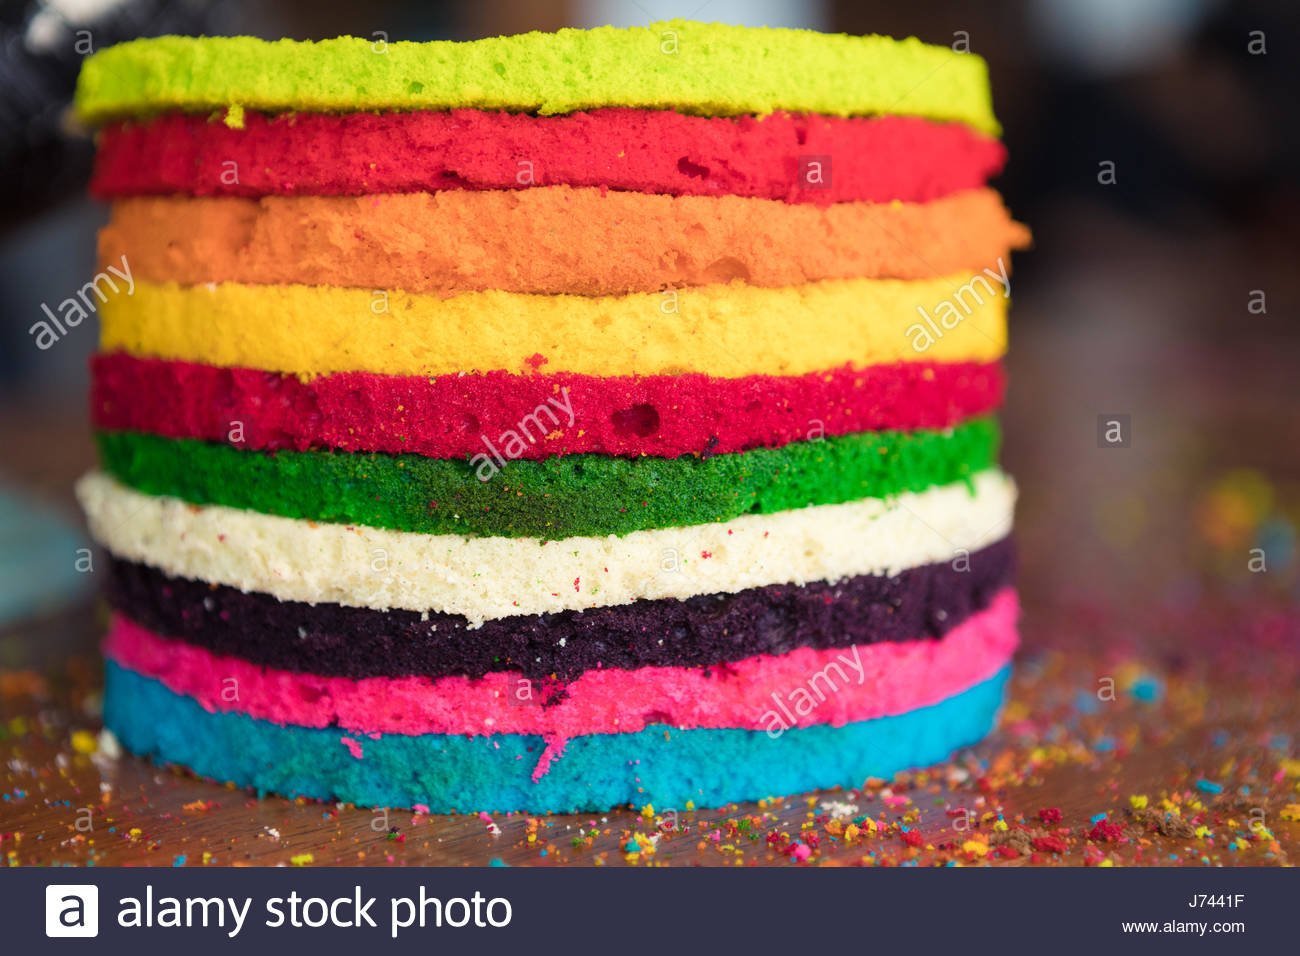 Пищевые красители это. Краситель для торта. Торт разноцветный. Синтетические пищевые красители. Натуральные красители для торта.